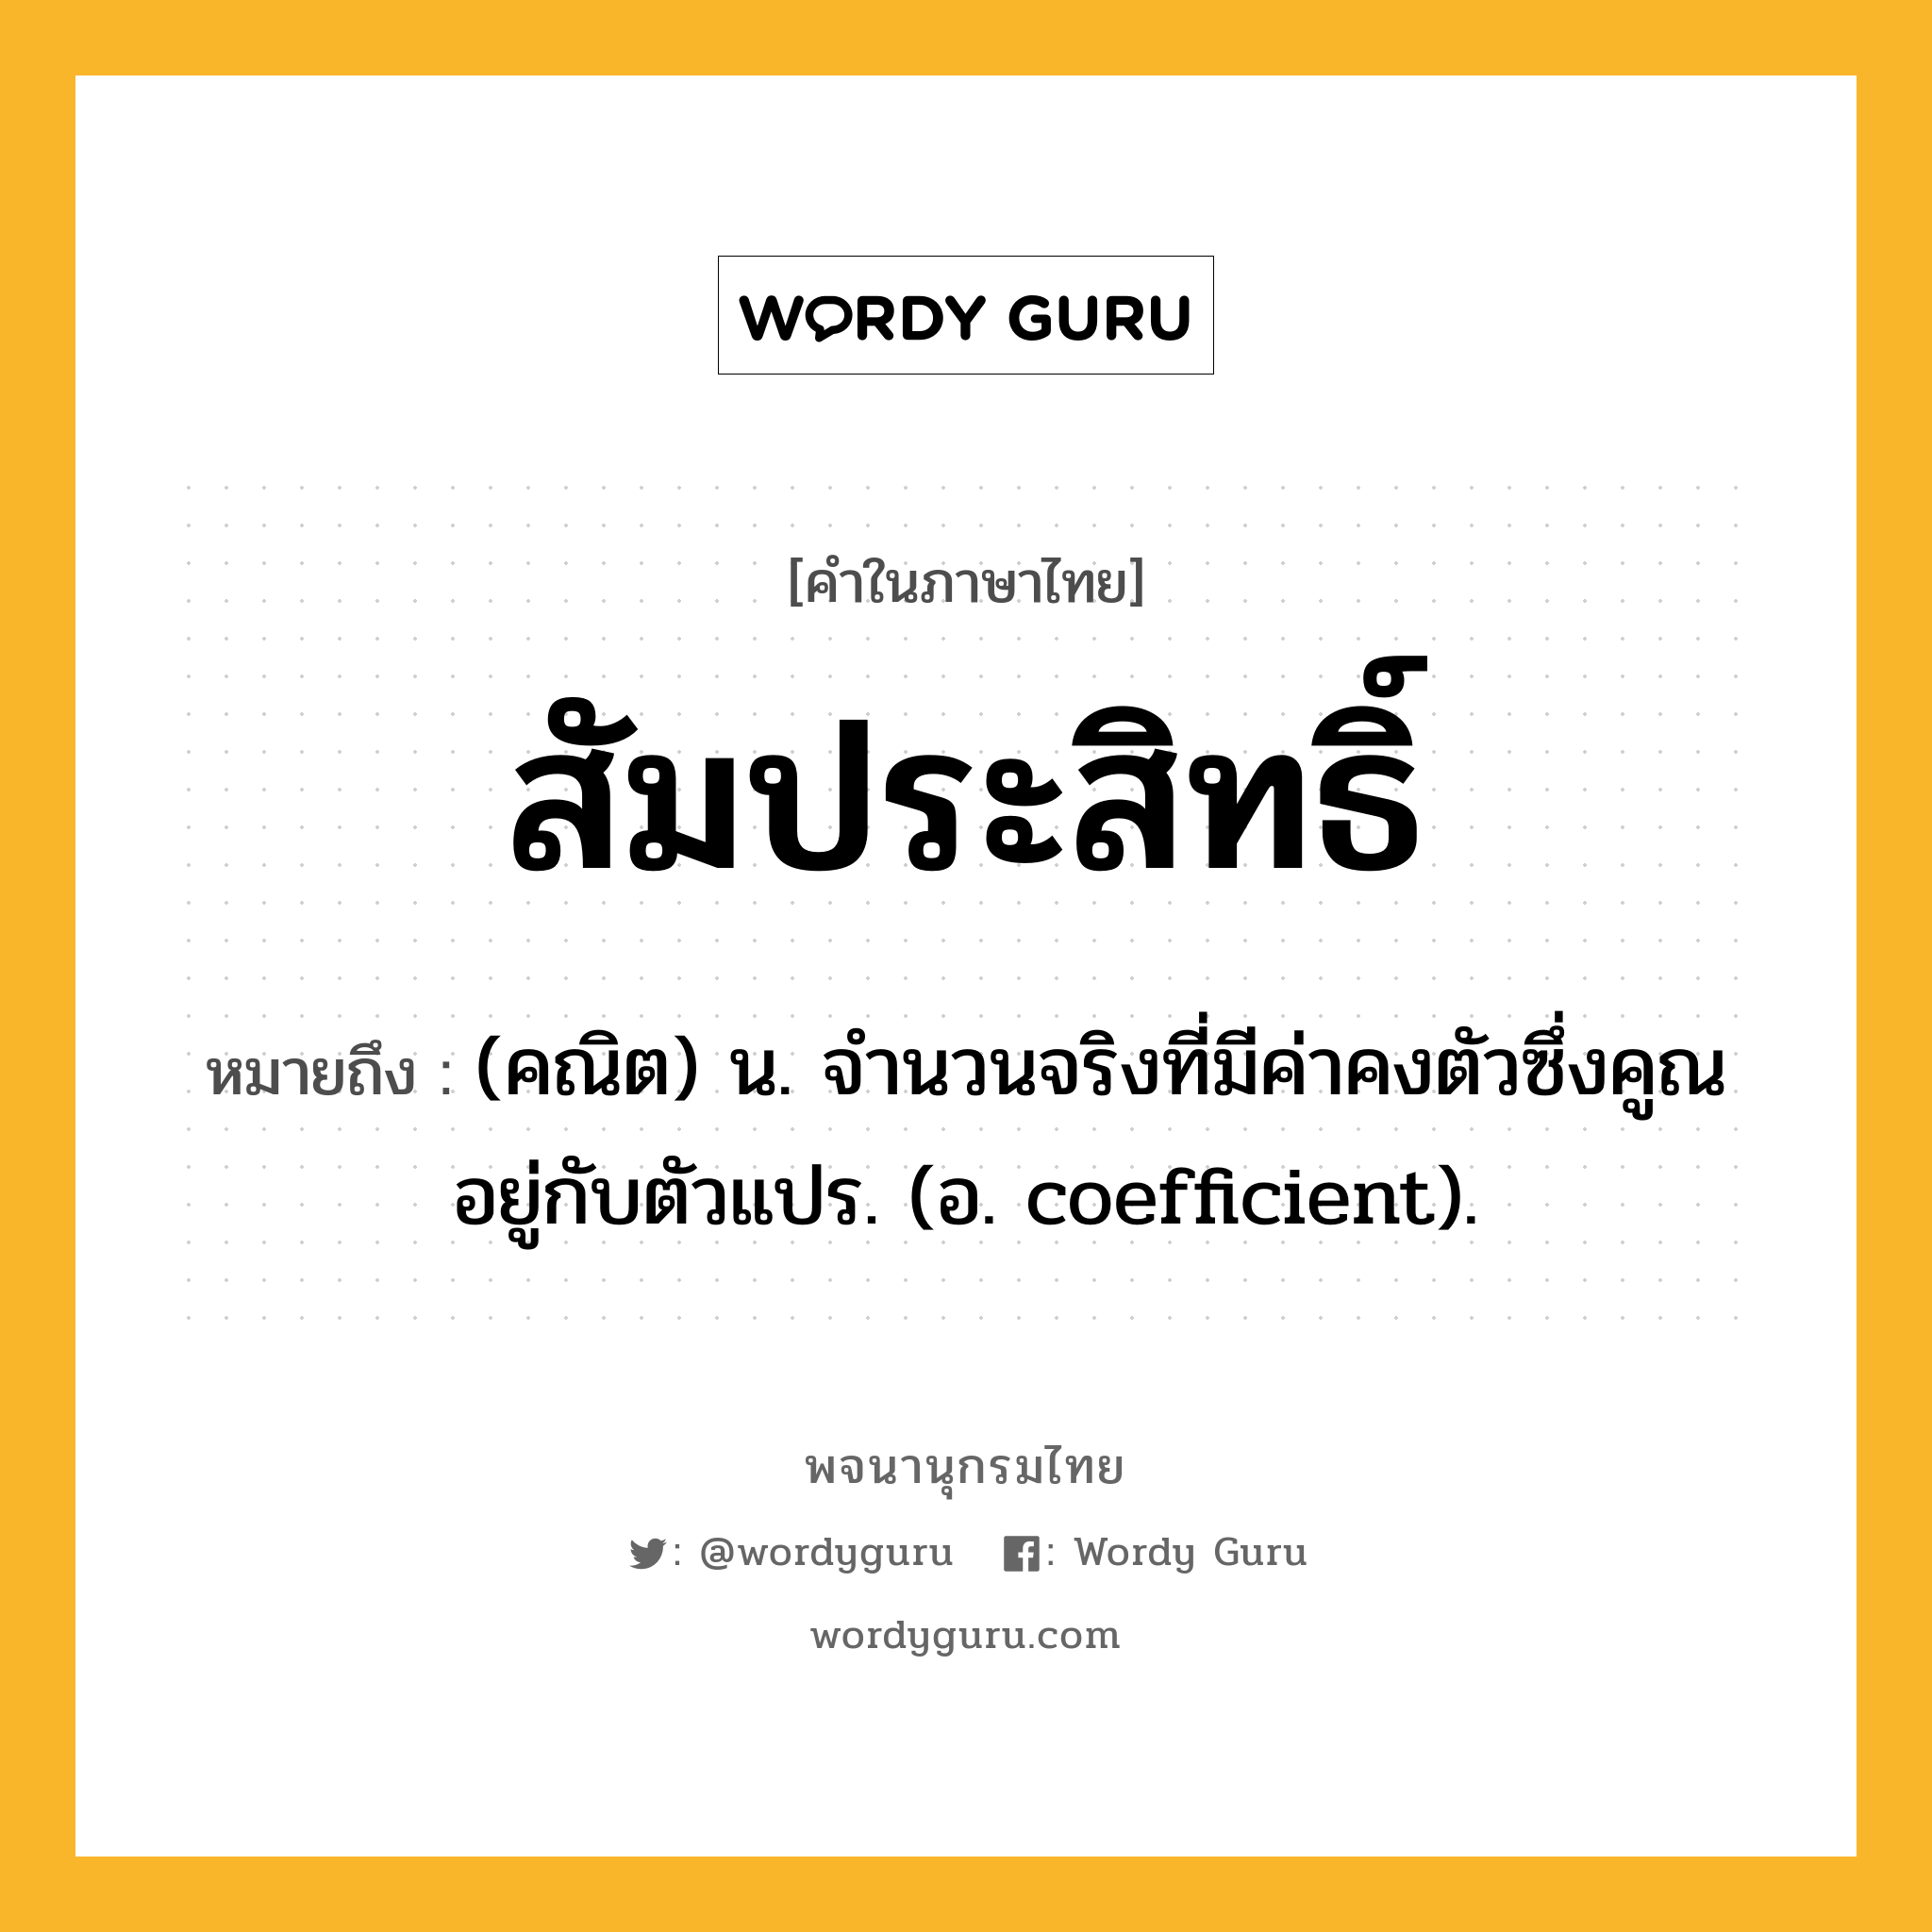 สัมประสิทธิ์ ความหมาย หมายถึงอะไร?, คำในภาษาไทย สัมประสิทธิ์ หมายถึง (คณิต) น. จํานวนจริงที่มีค่าคงตัวซึ่งคูณอยู่กับตัวแปร. (อ. coefficient).